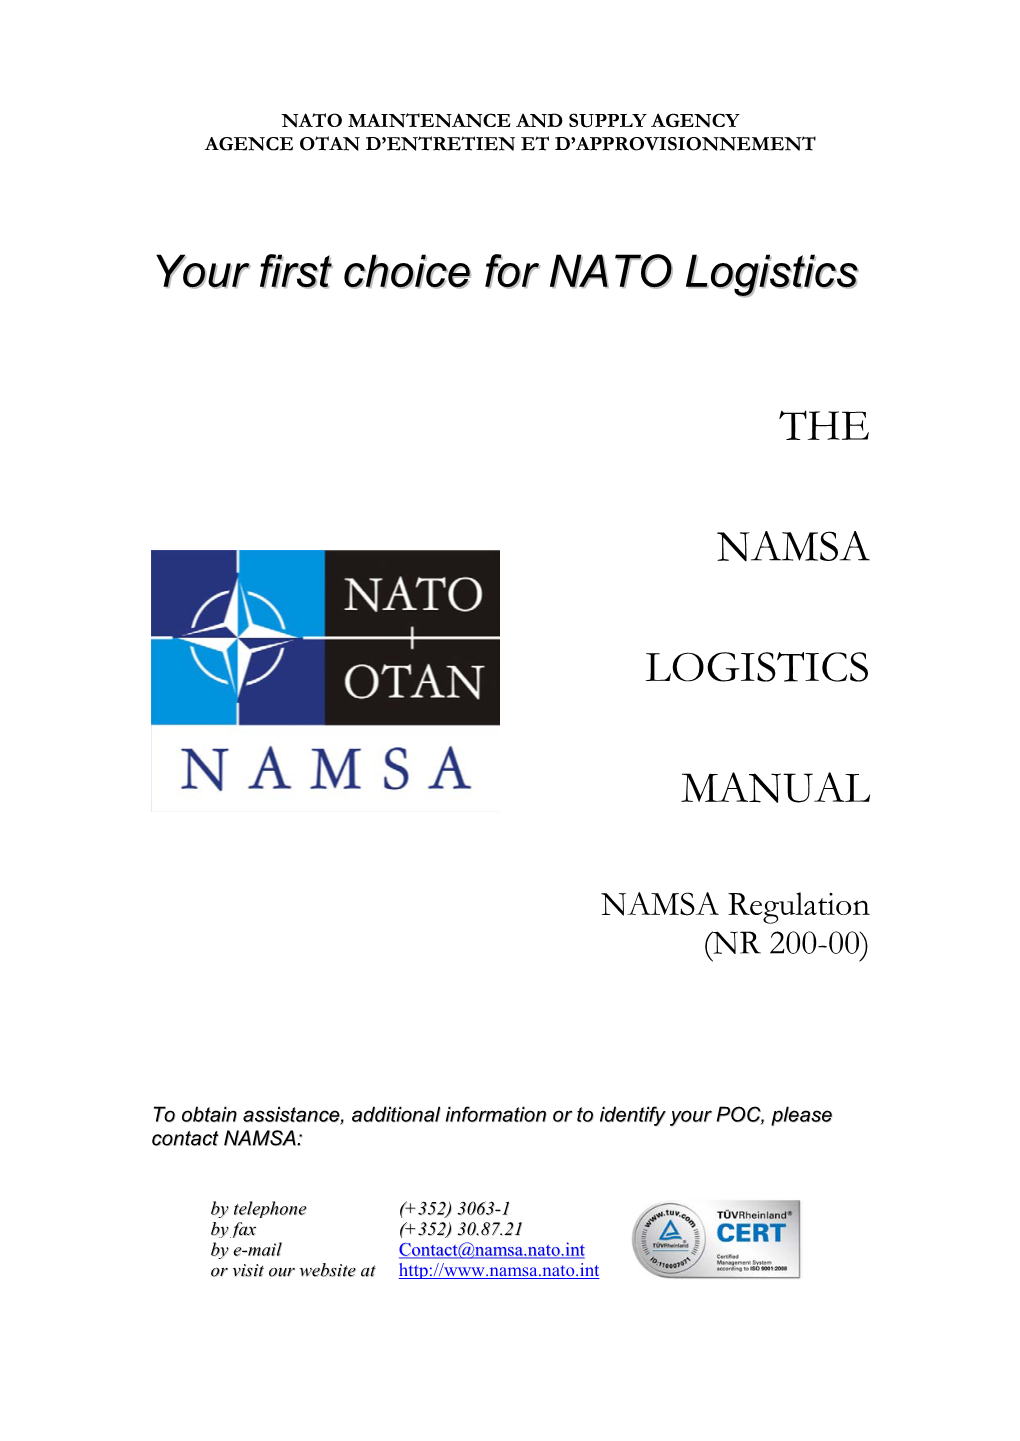 NAMSA Logistics Manual (TOC) NR